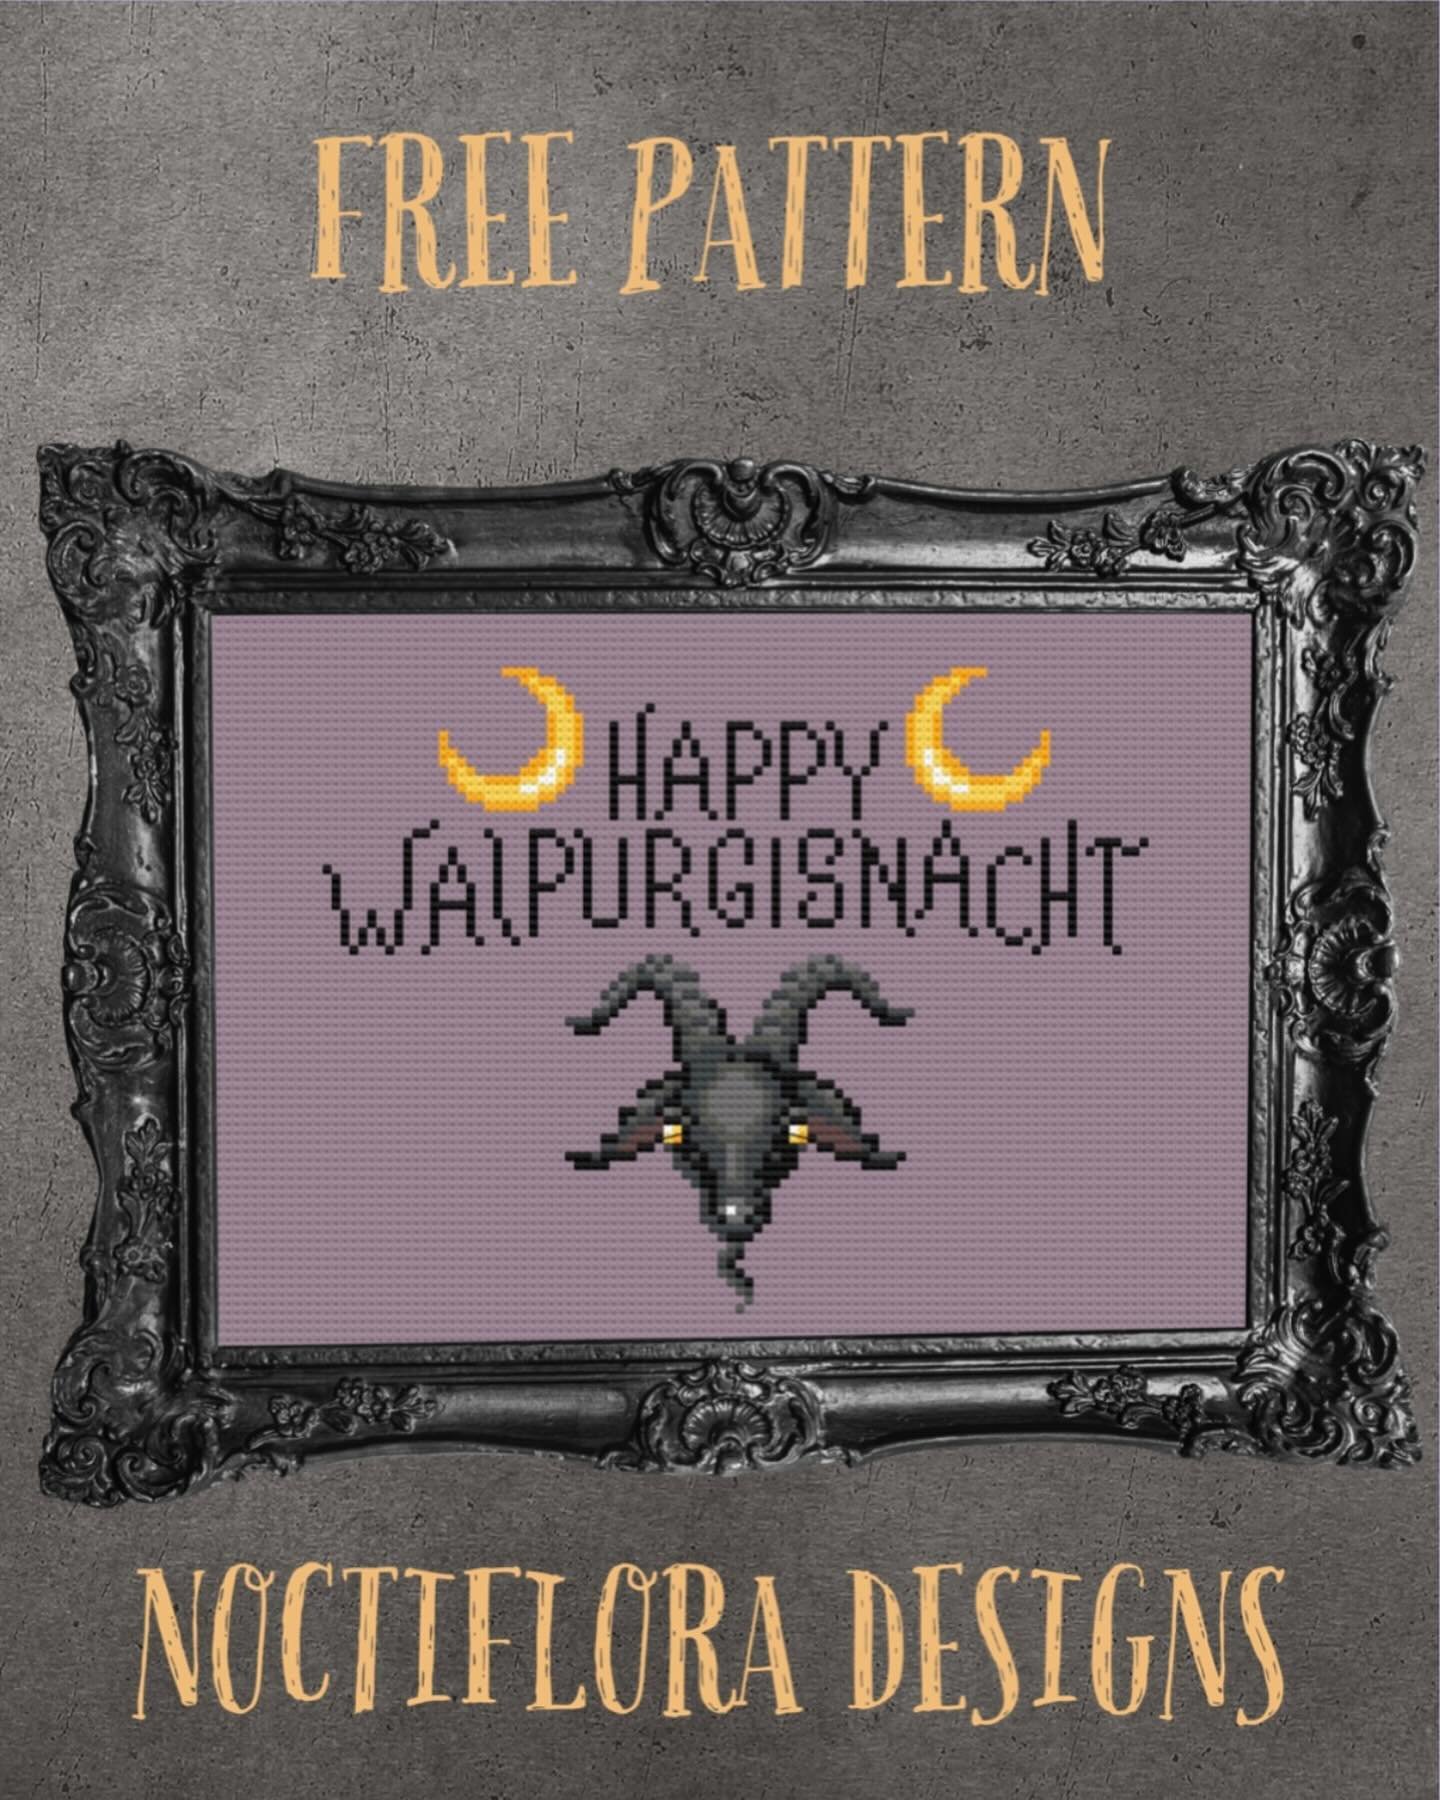 Happy Walpurgisnacht and Halfway to Halloween 👻🦇🐈&zwj;⬛

#noctifloradesigns #freecrossstitchpattern #crossstitch #witchycrafts #witchycrossstitch #craftywitch #stitchwitch #stitchcraft #pagancrossstitch #pagancrafts #xstitch #xstitching #crossstit